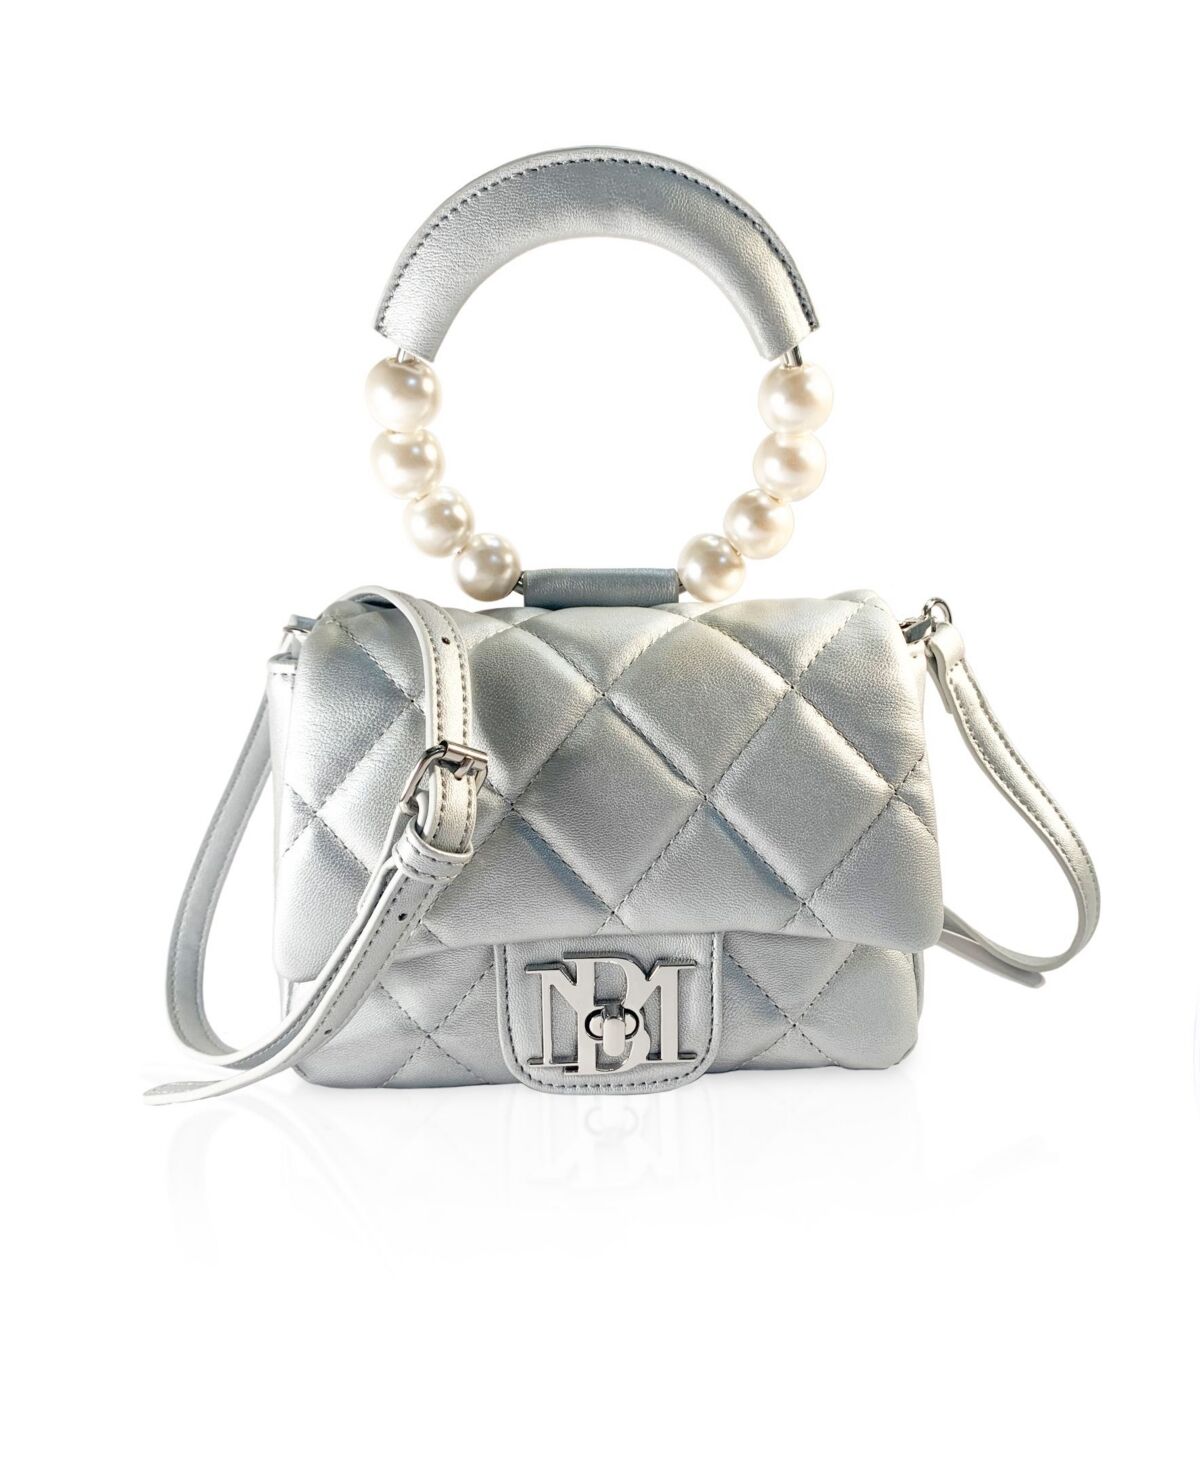 Badgley Mischka Women's Mini Flap Quilted Handbag - Metallic Gray